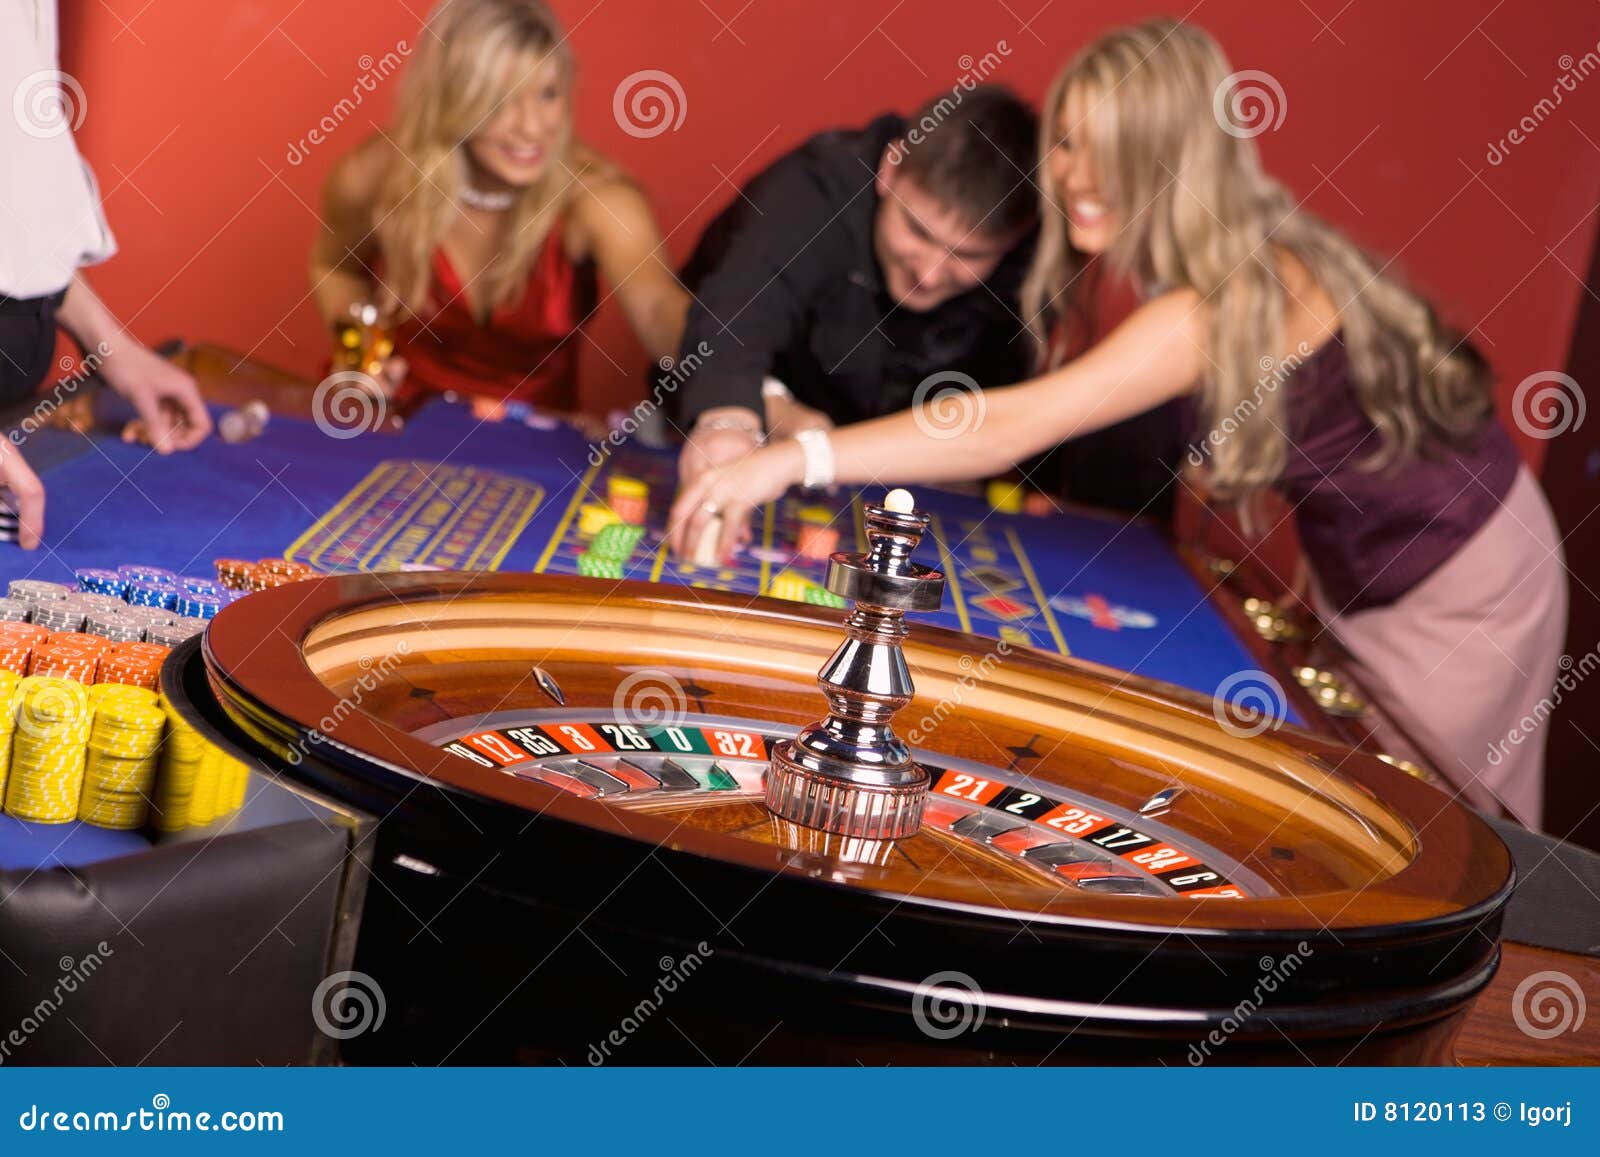 20 bet online casino